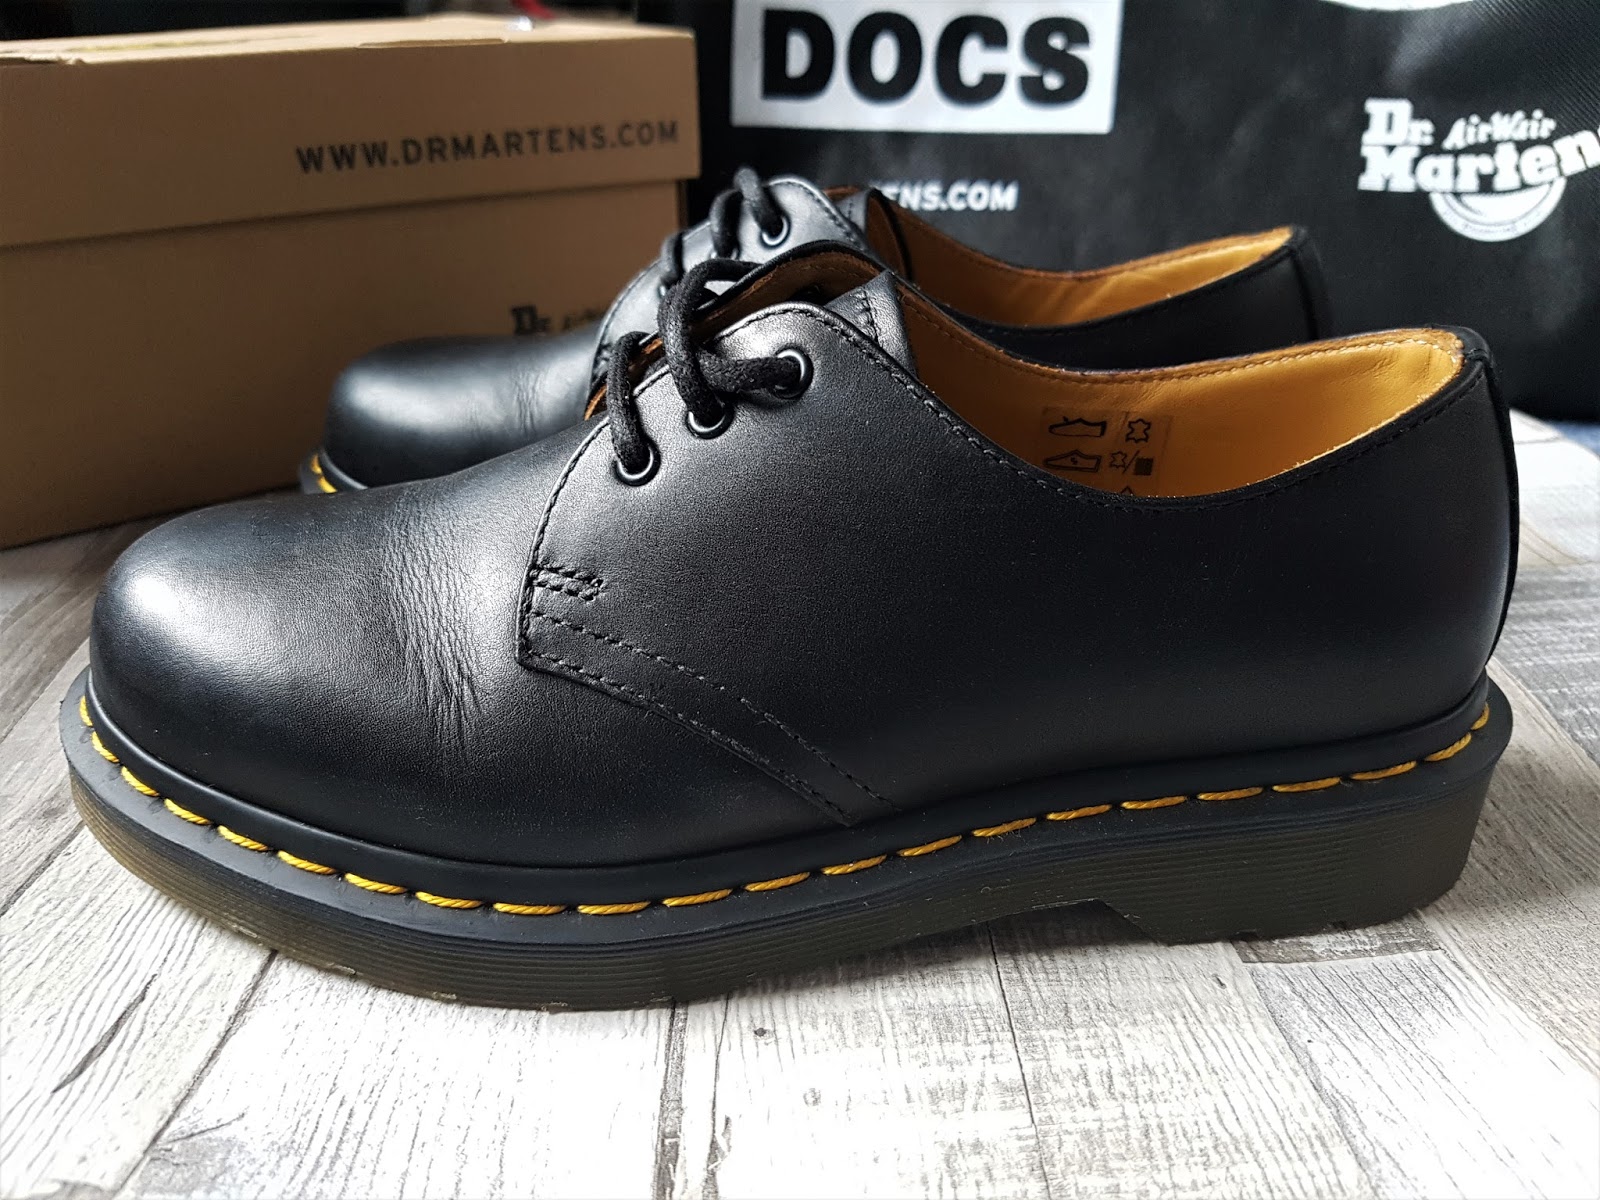 docs shoes